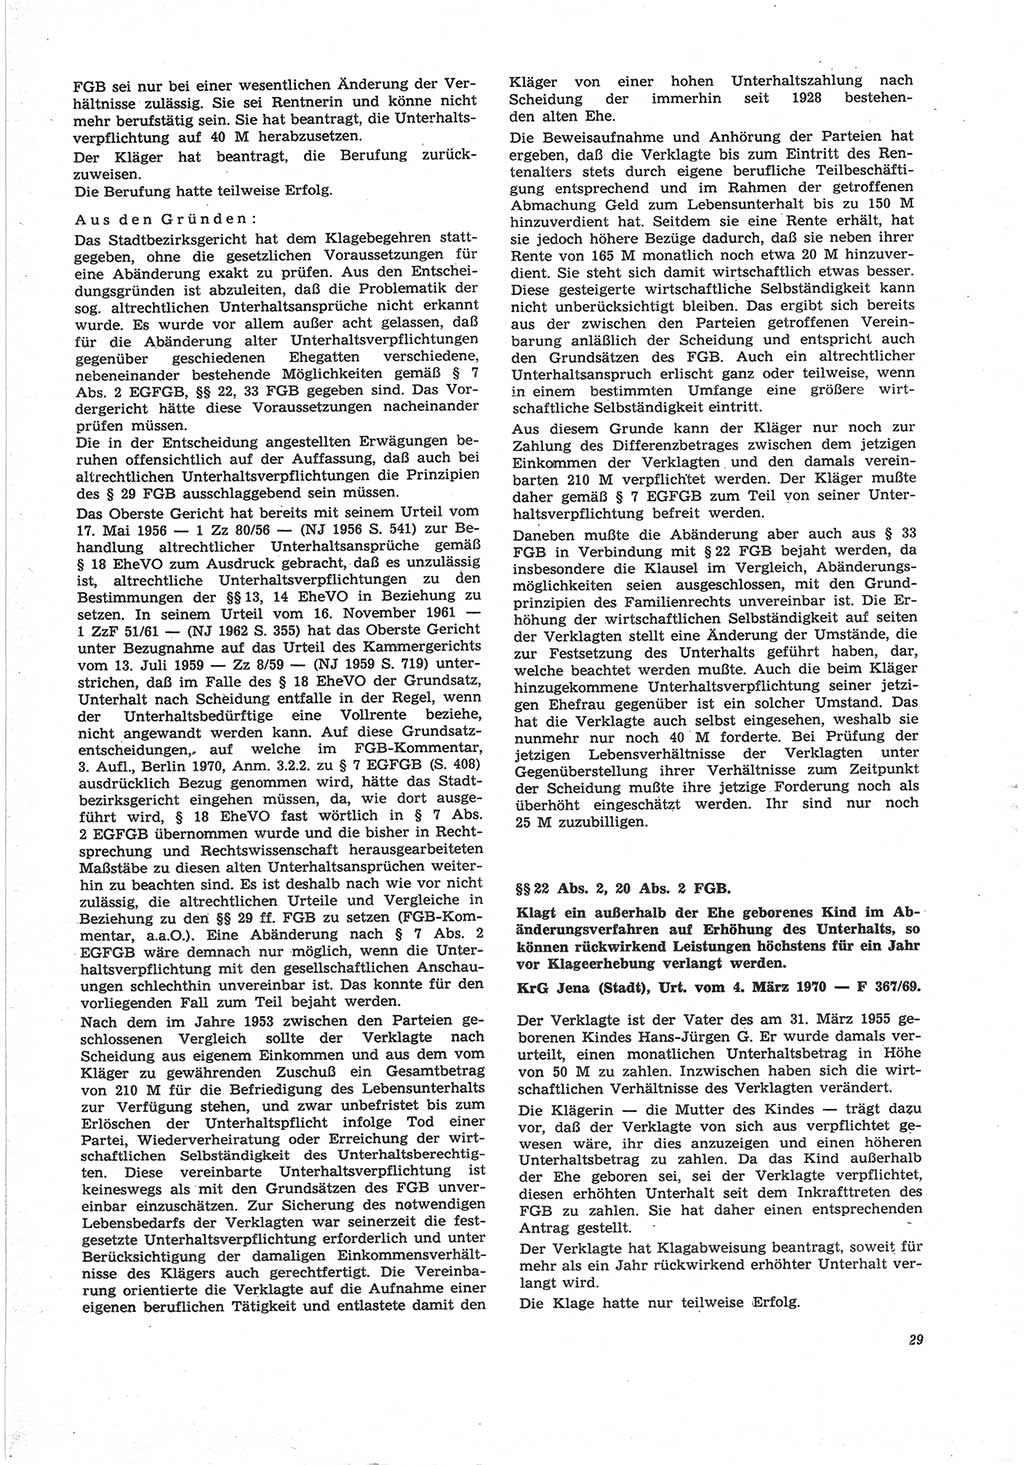 Neue Justiz (NJ), Zeitschrift für Recht und Rechtswissenschaft [Deutsche Demokratische Republik (DDR)], 25. Jahrgang 1971, Seite 29 (NJ DDR 1971, S. 29)